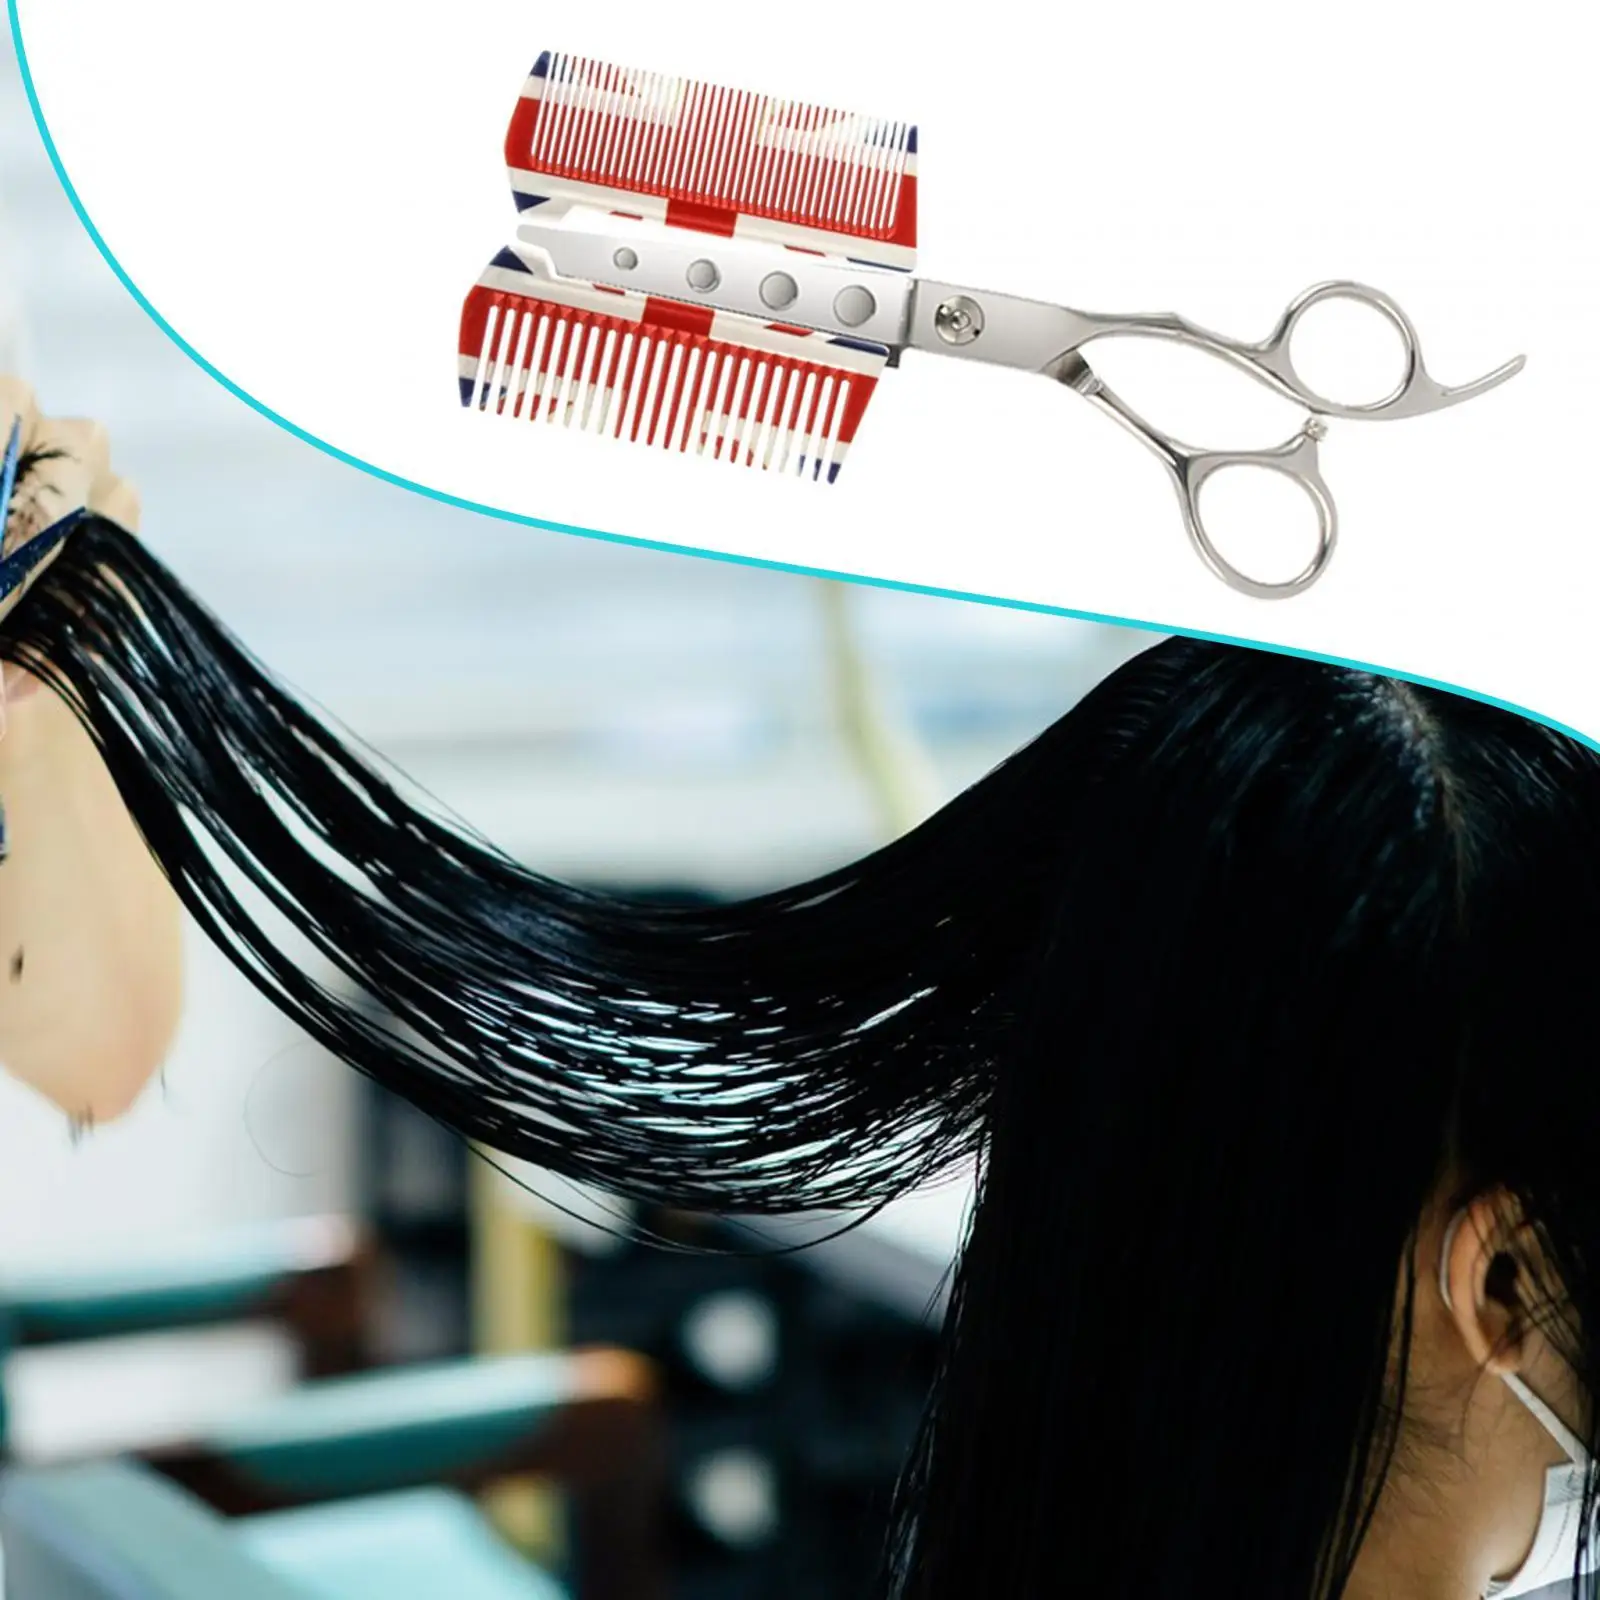 Hair Cutting Scissors Cut Tool Cutting Comb Handheld Hairstyle Tool Hair Salon Haircut for Home Hair Salon Barber Shop Women